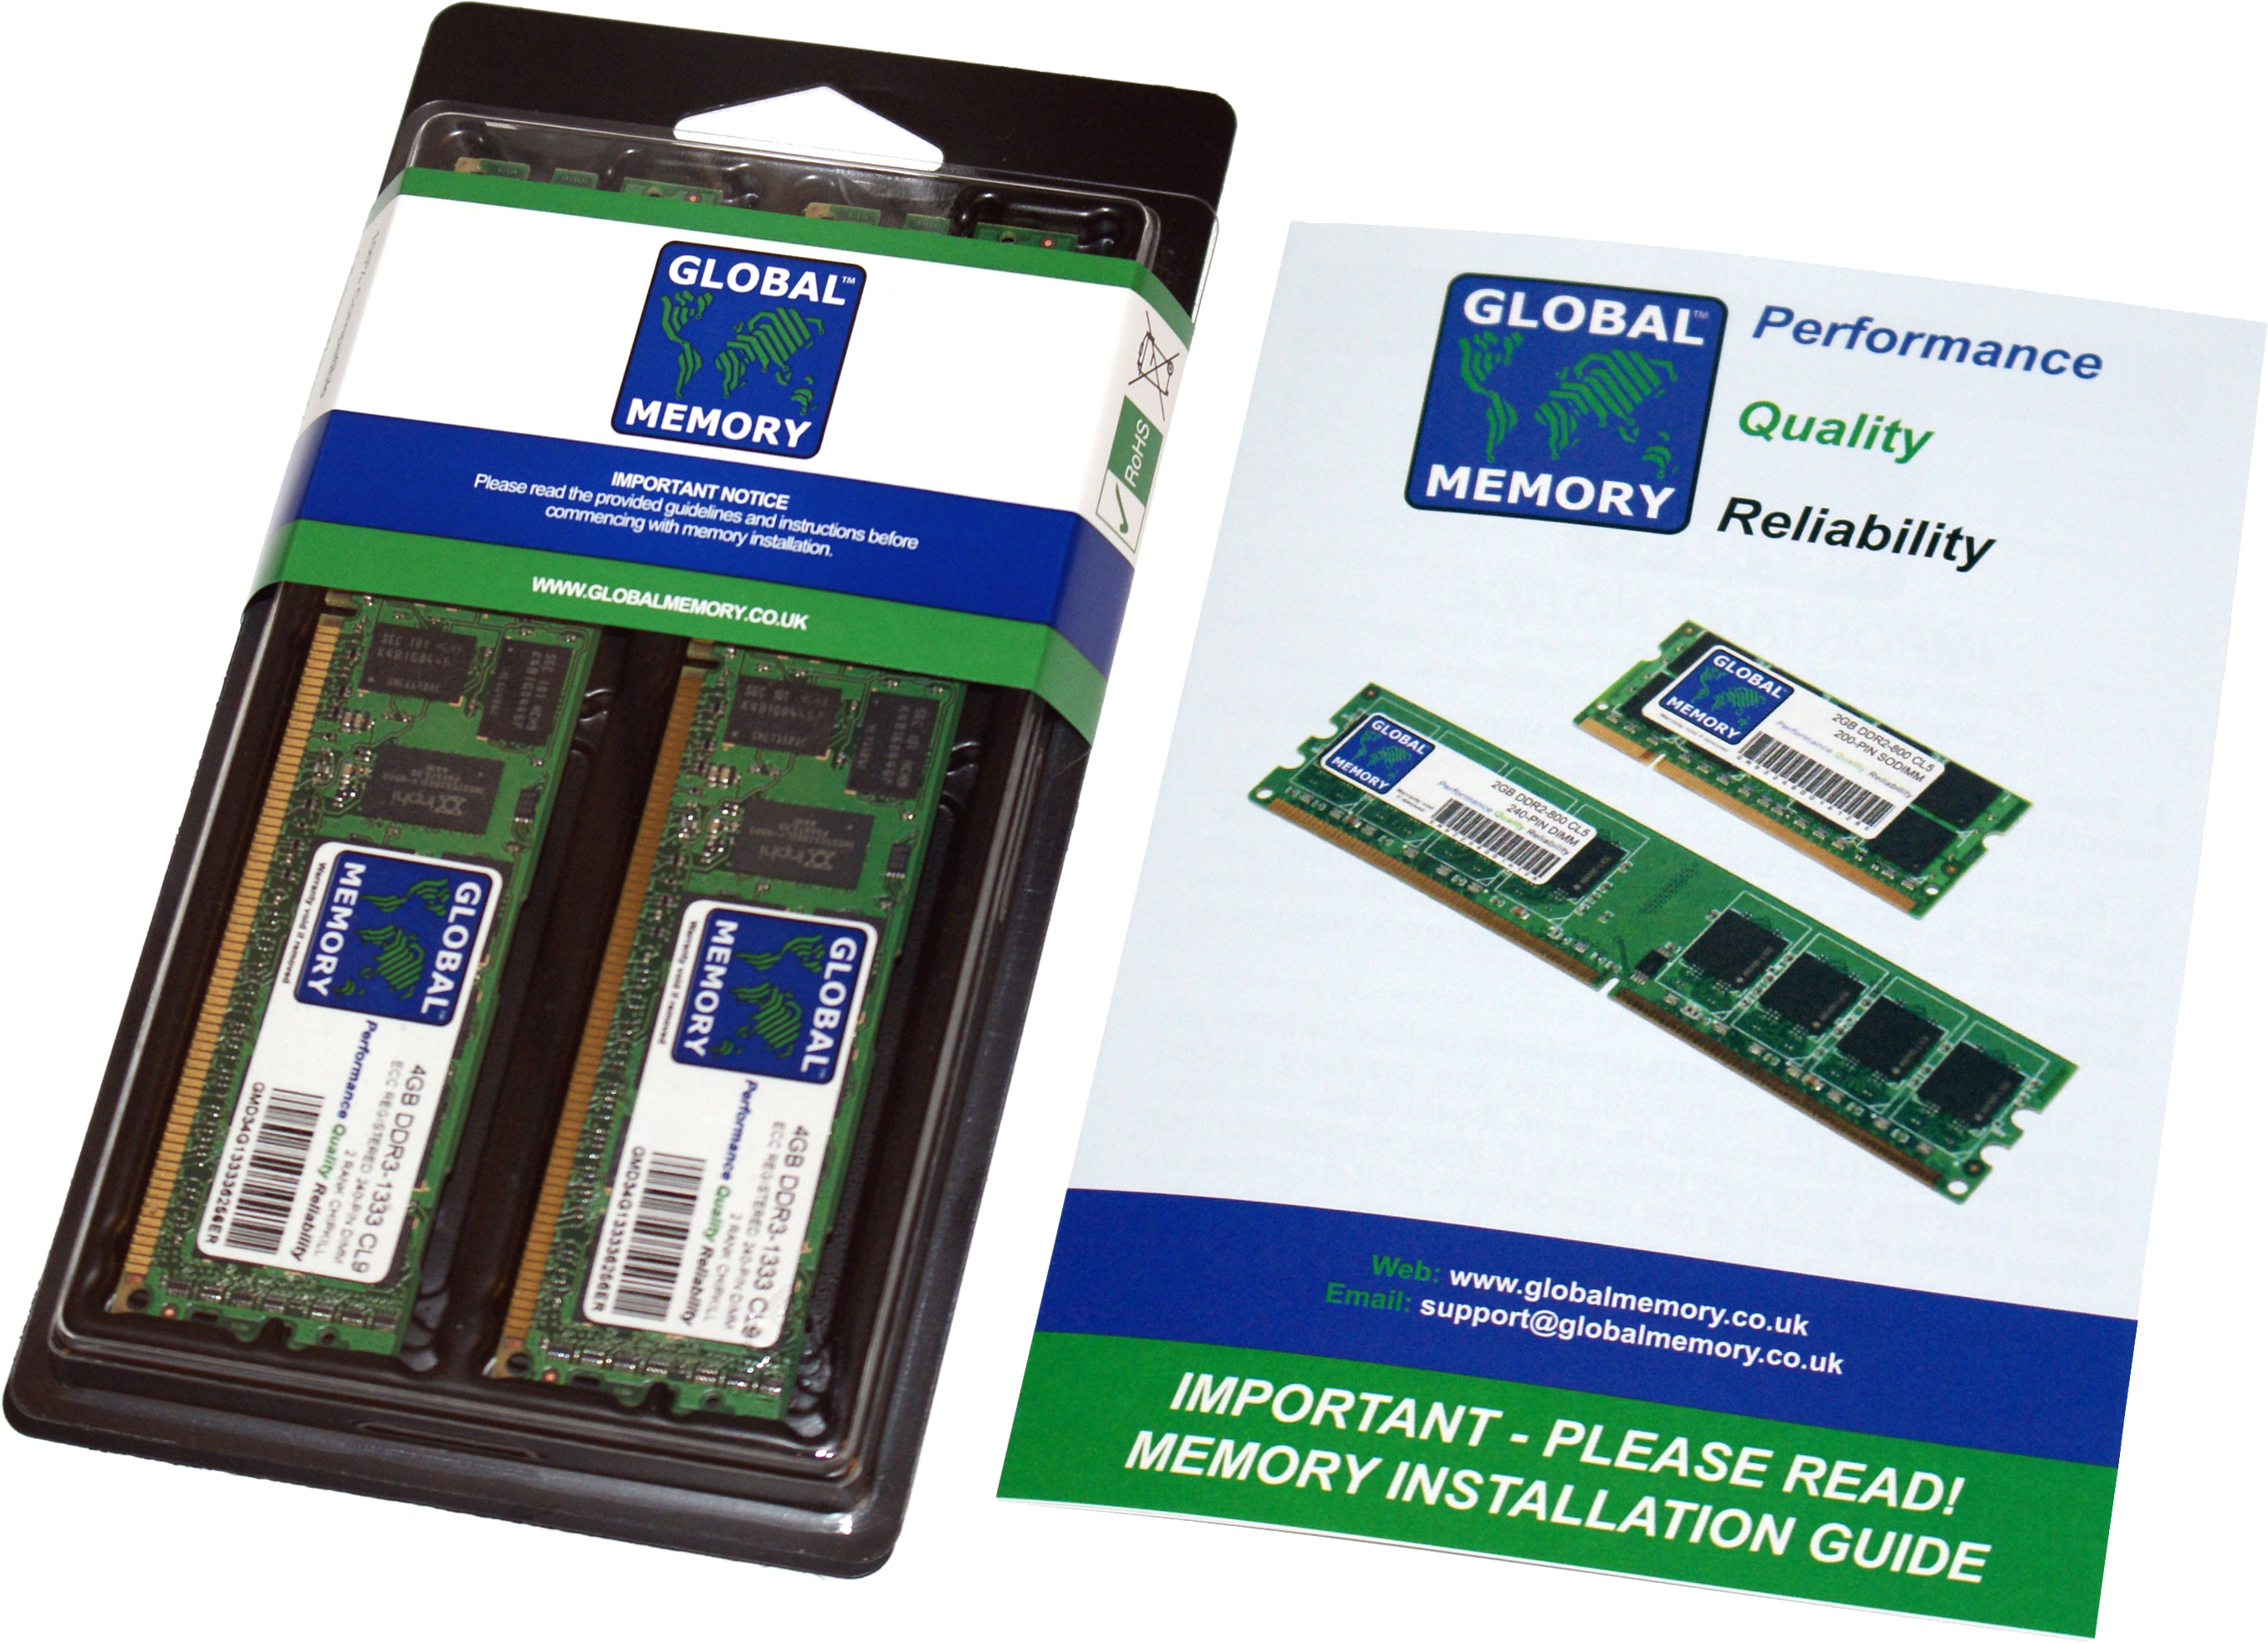 128GB (2 x 64GB) DDR4 2933MHz PC4-23400 288-PIN LOAD REDUCED ECC REGISTERED DIMM (LRDIMM) MEMORY RAM KIT FOR SUN SERVERS/WORKSTATIONS (8 RANK KIT CHIPKILL)